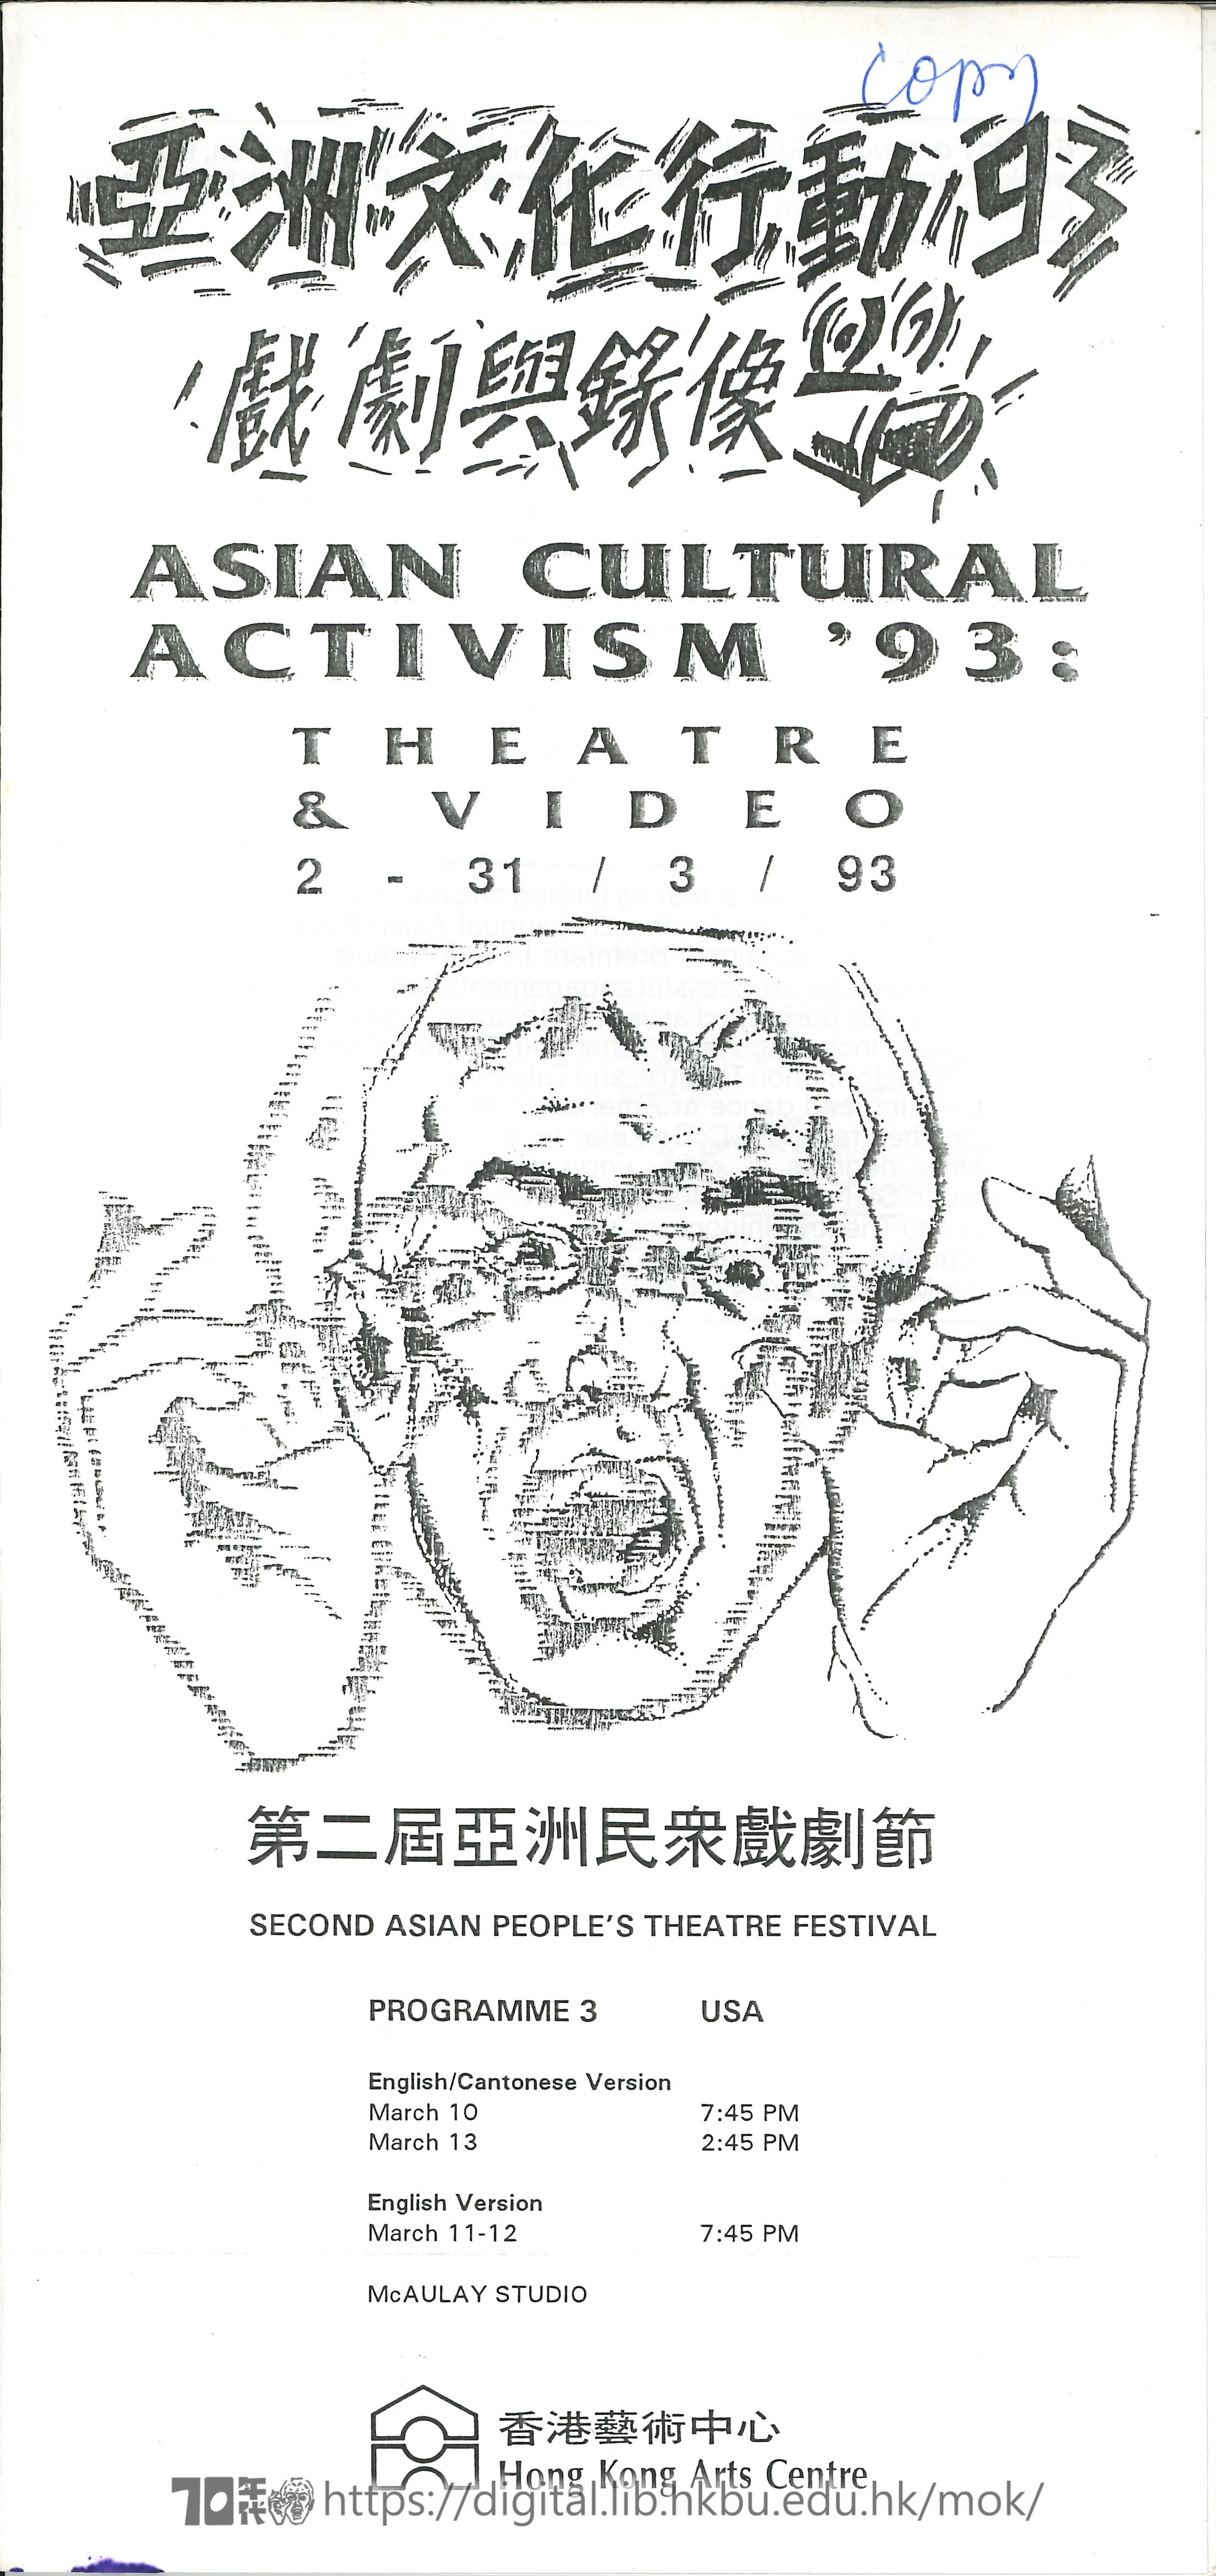 第二屆亞洲民眾戲劇節  亞洲文化行動93 戲劇與錄像  (節目-3）第二届亞洲民衆戲劇節 場刊  